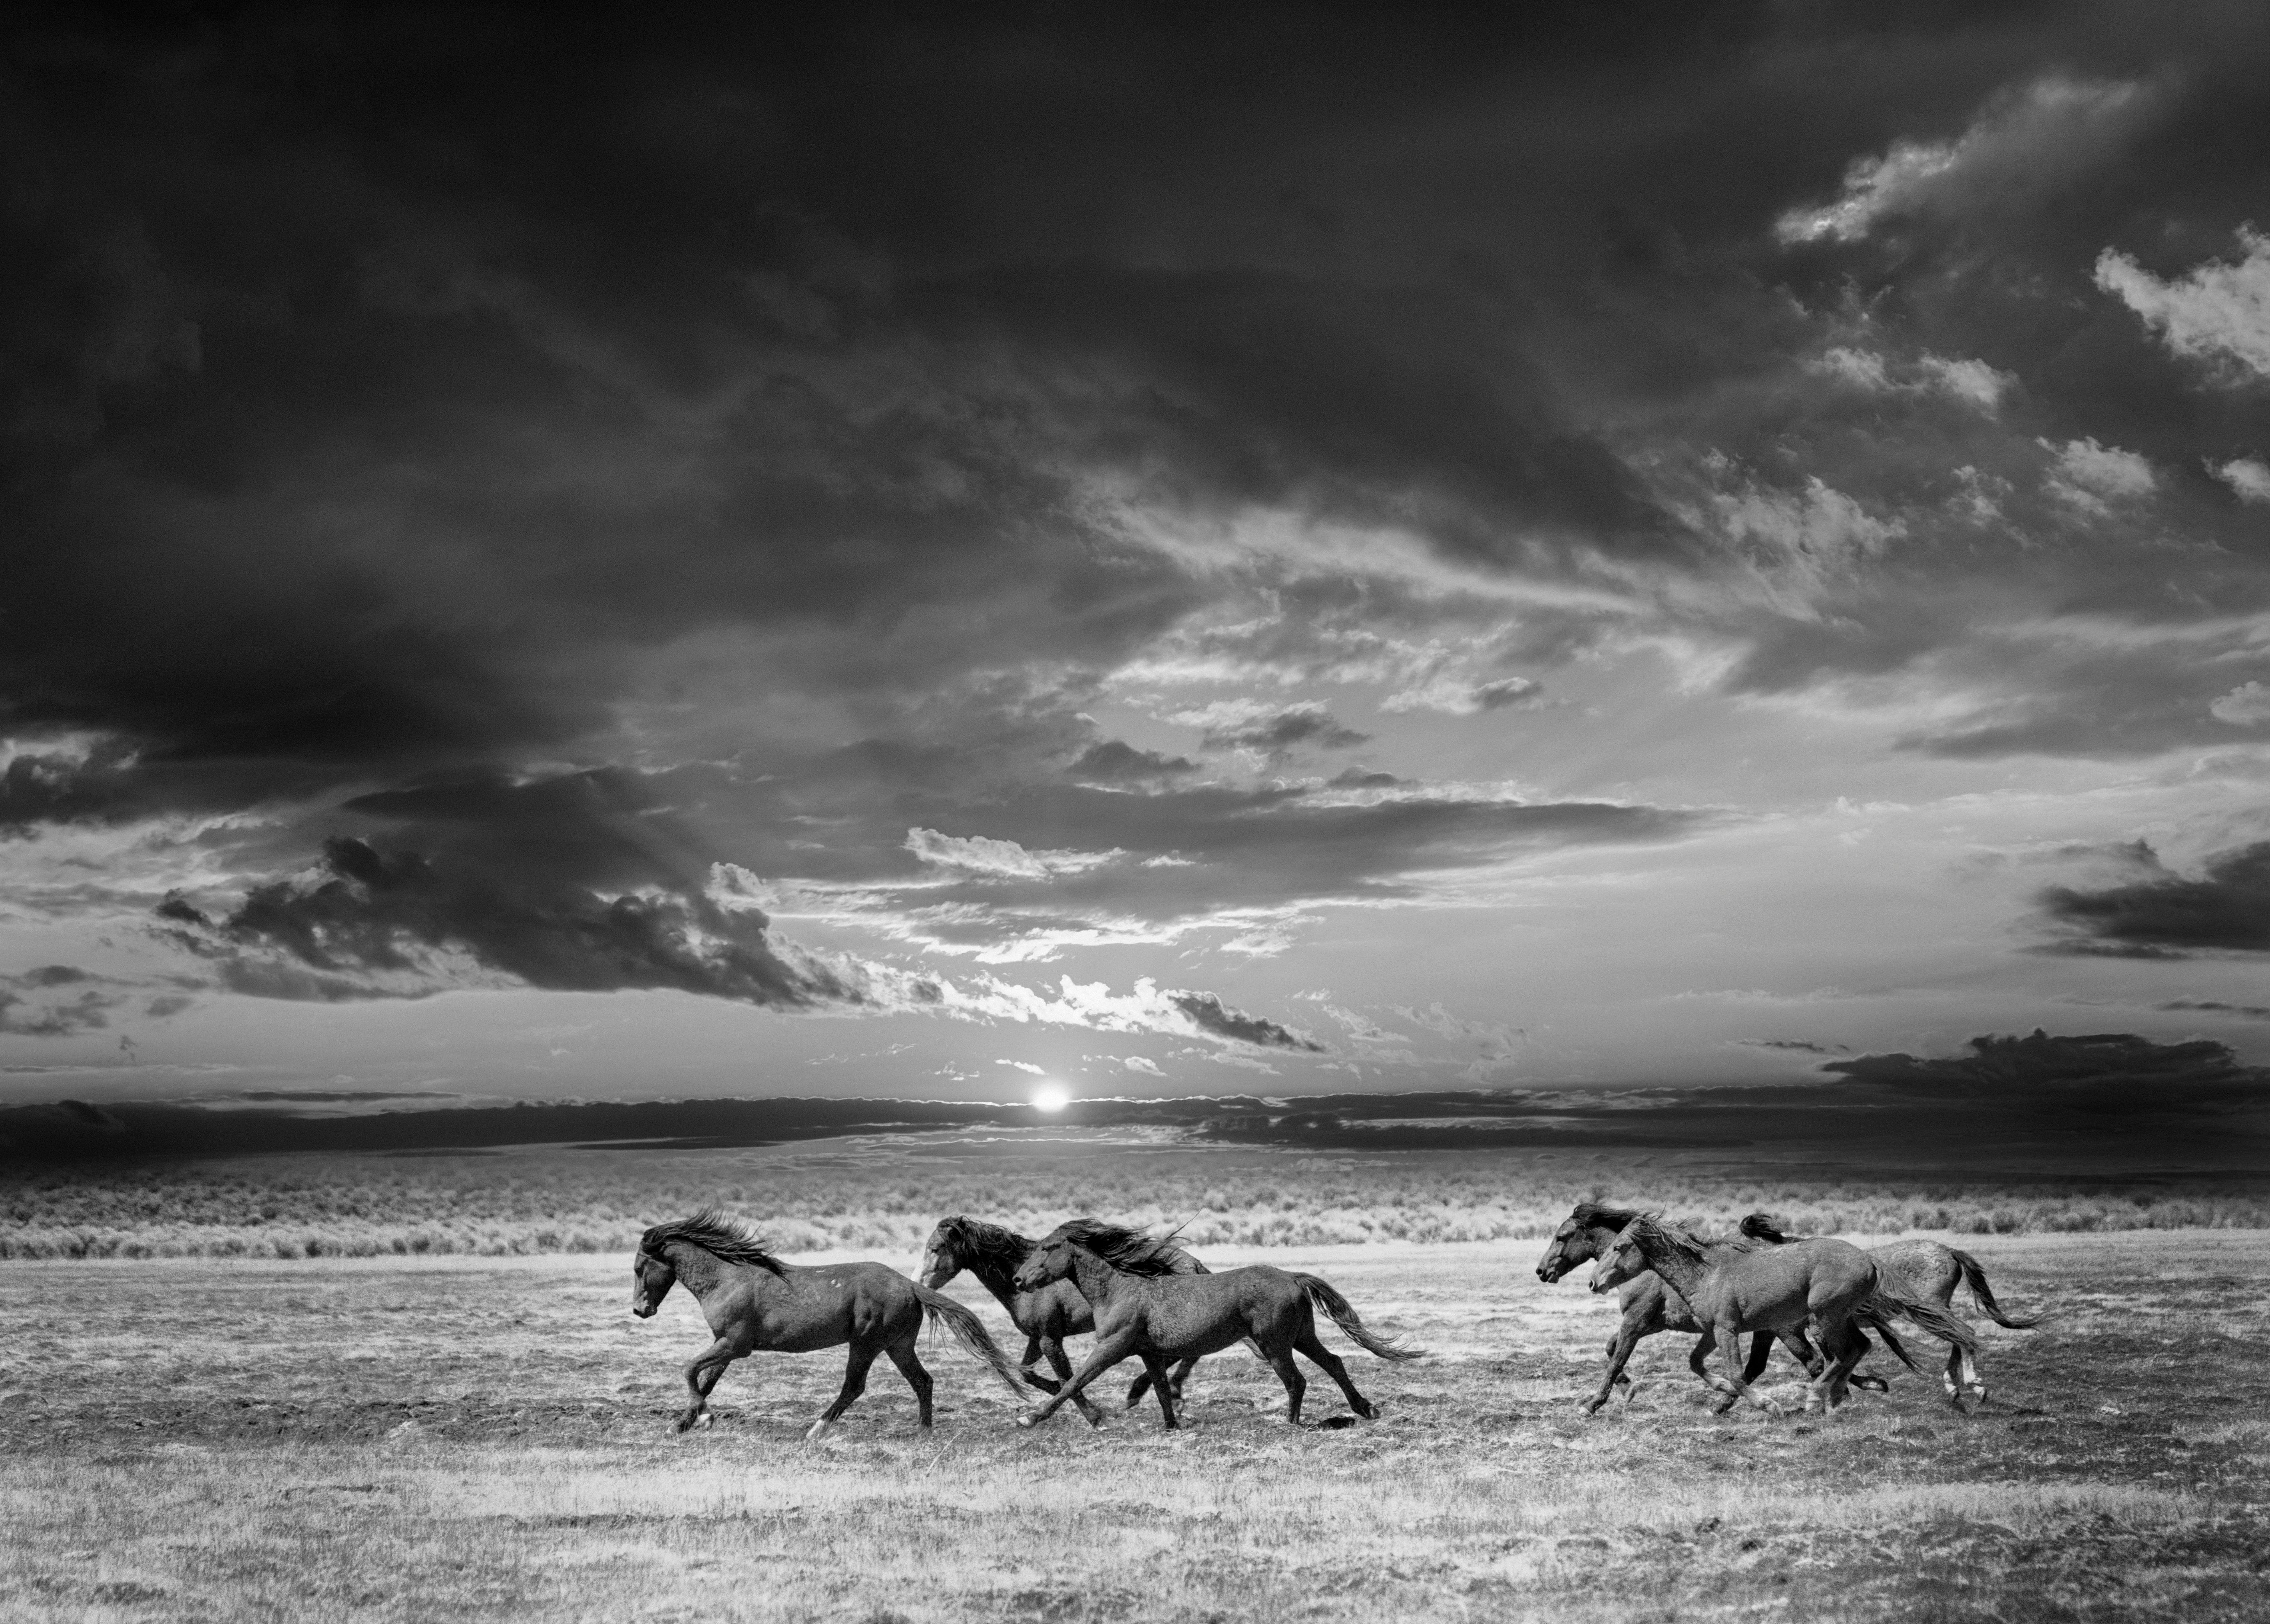 Shane Russeck Black and White Photograph – „Chasing the Light“ 60x40 Schwarz-Weiß-Fotografie von Wildpferden in Schwarz-Weiß